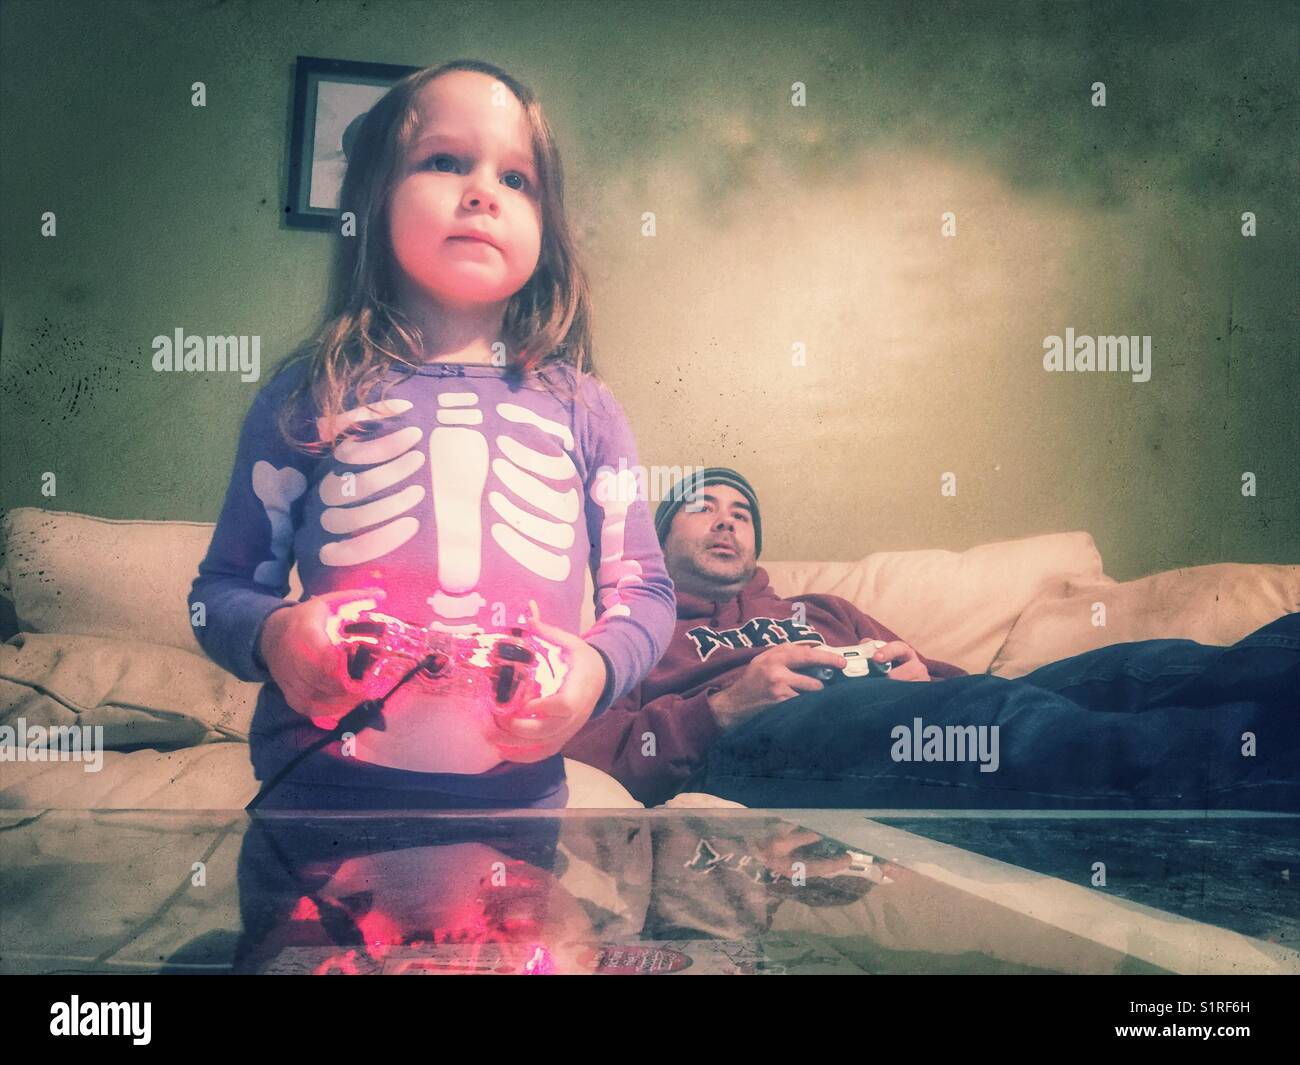 Petite fille en violet squelette pajamas holding controller à jouer à des jeux vidéo avec son père Banque D'Images